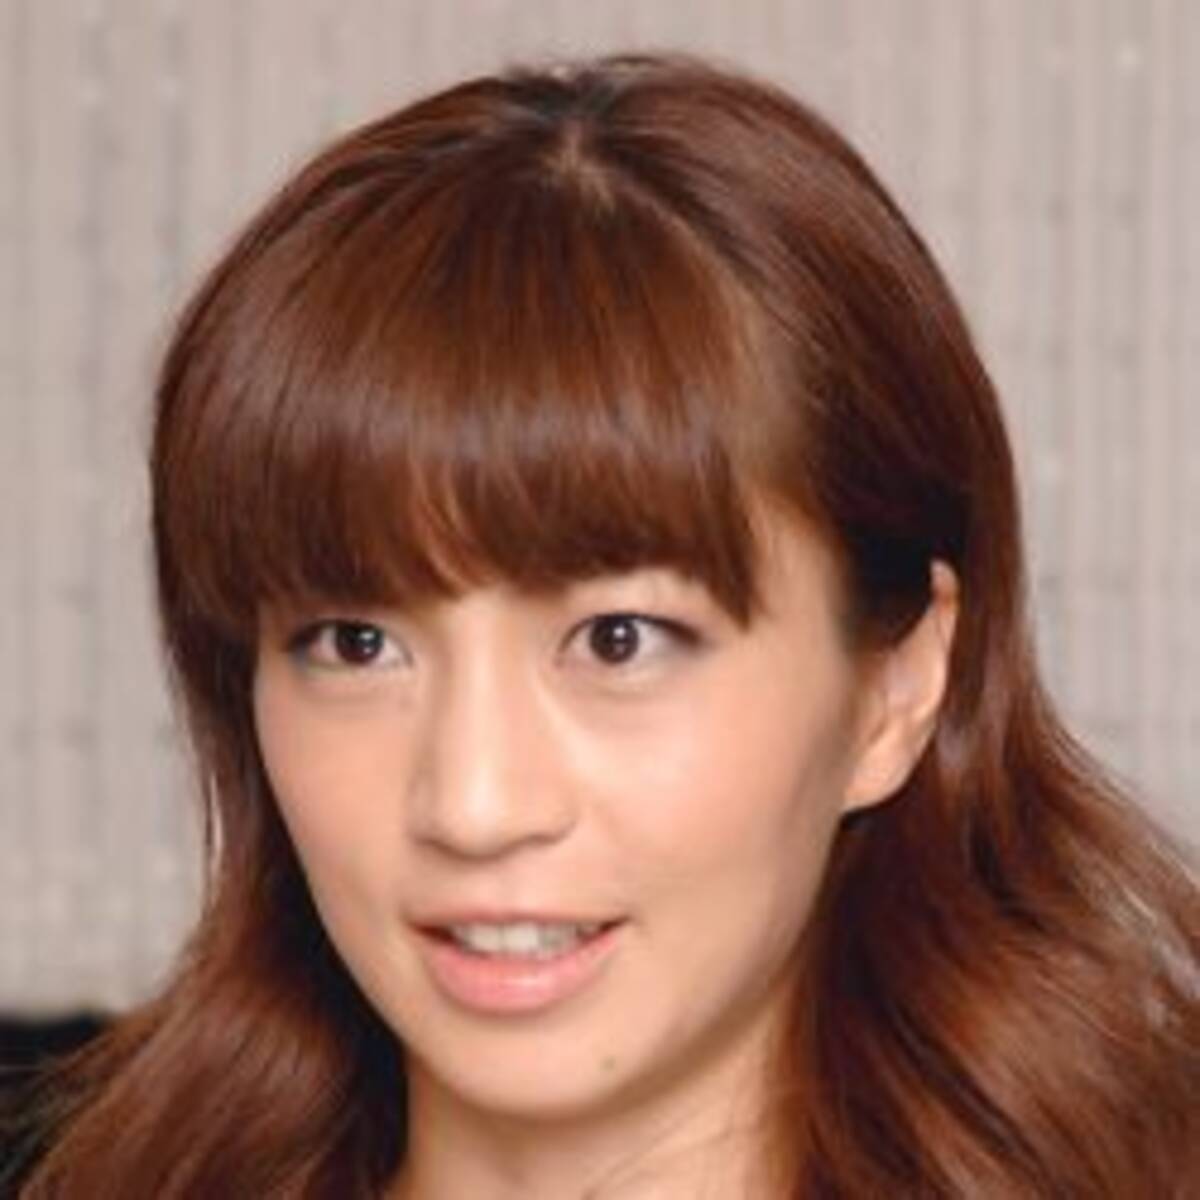 浮き出すぎ 安田美沙子 旅ラン姿に 肌着の線が見える と視聴者が大歓喜 19年11月27日 エキサイトニュース